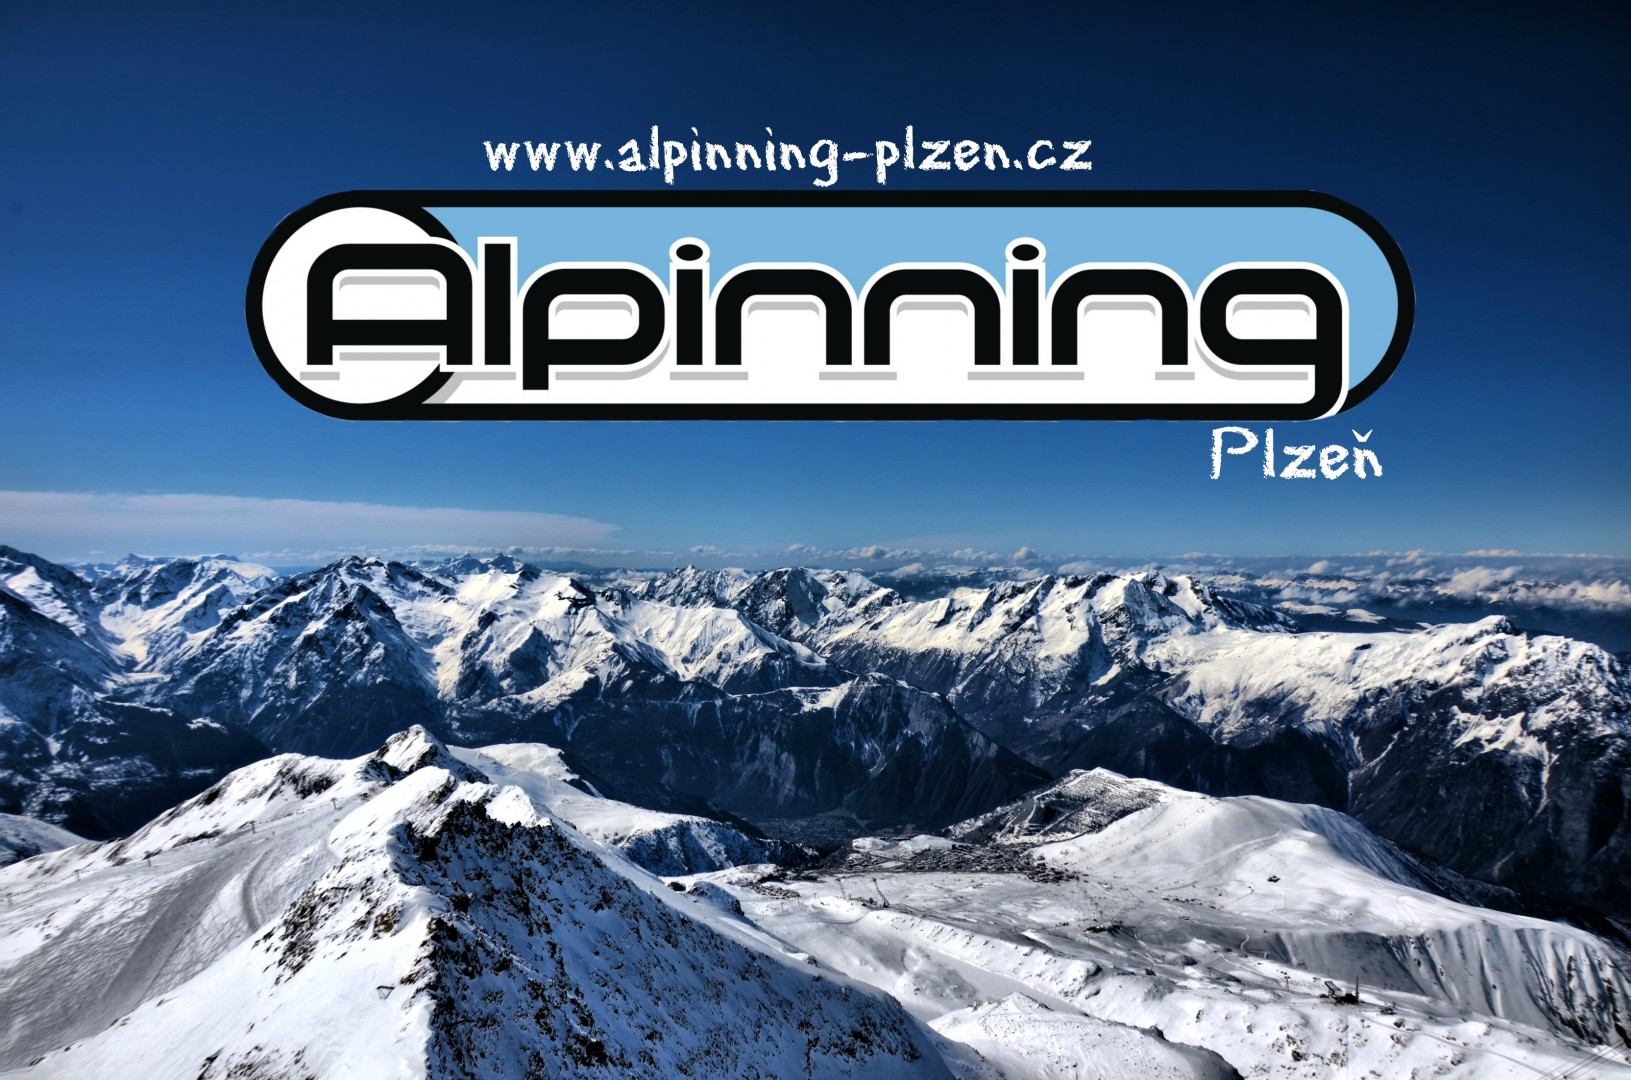 Alpinning